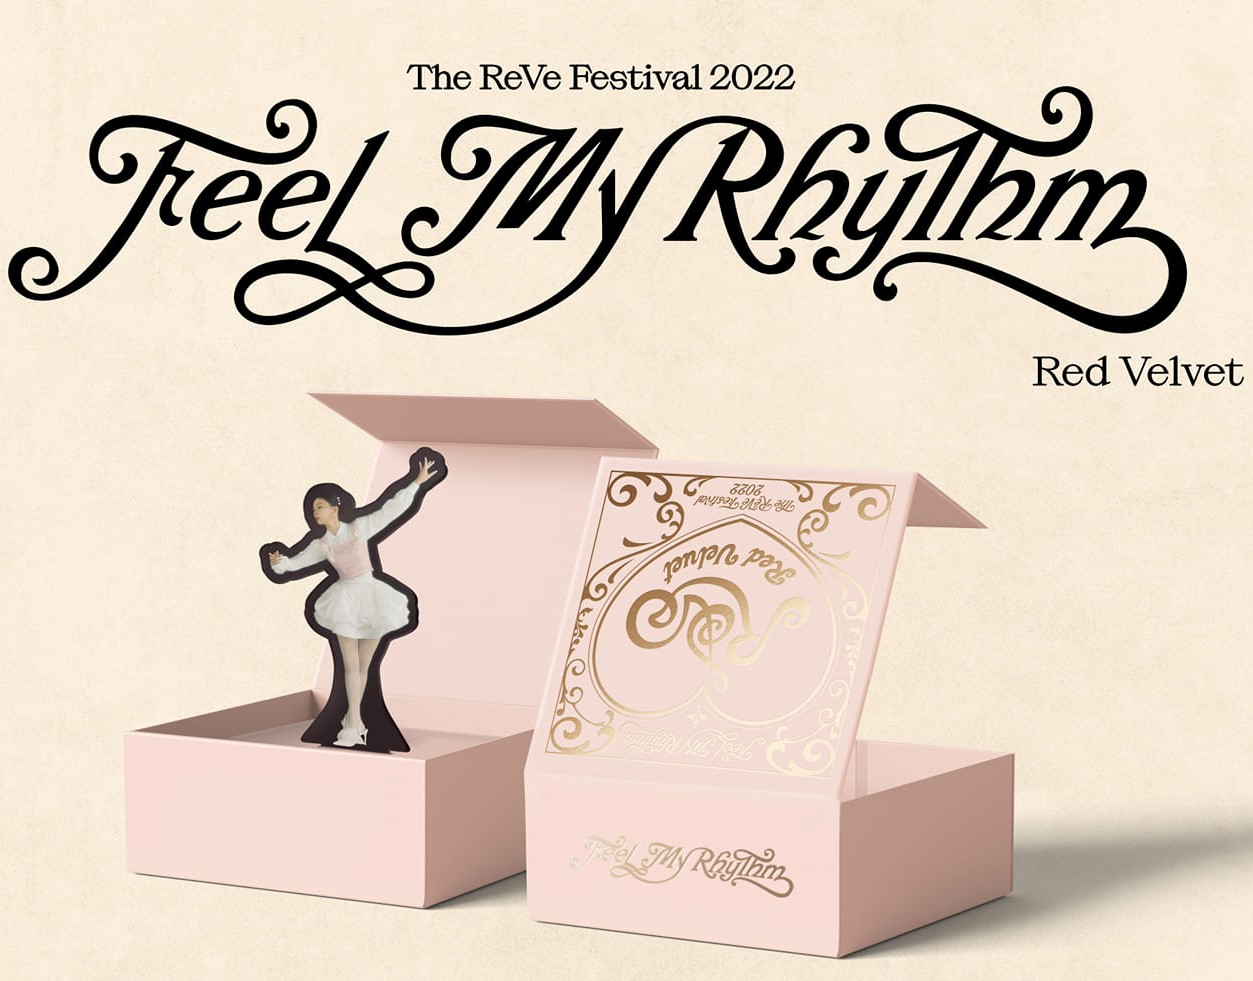 Red Velvet – The Reve Festival: Feel My Rhythm (Orgel Version)